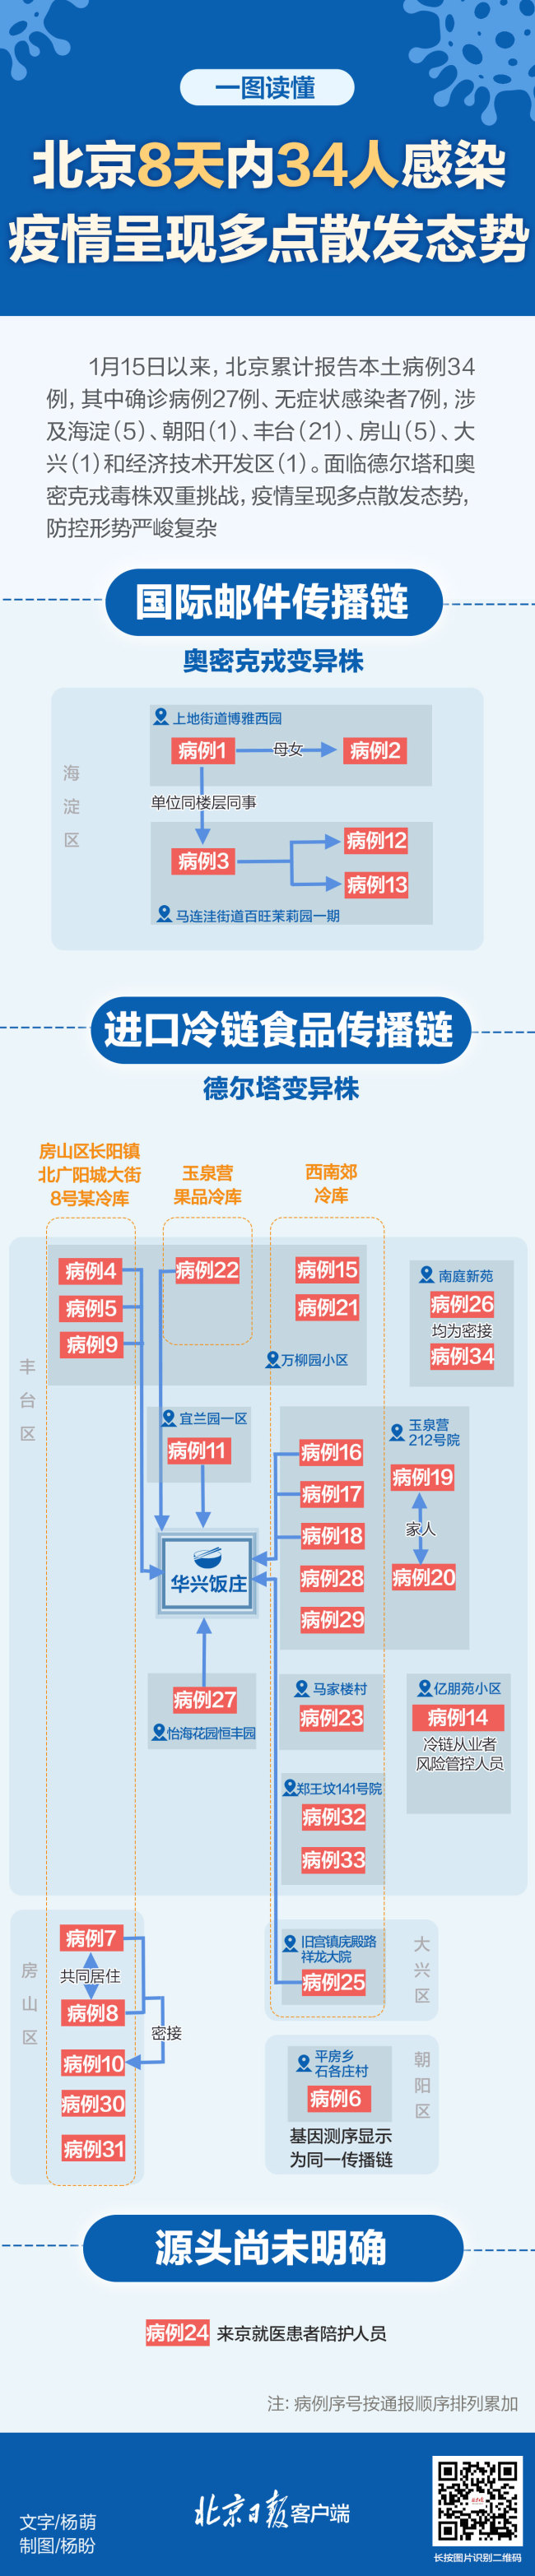 北京自1月15日累计34例感染者 一图读懂病例关系